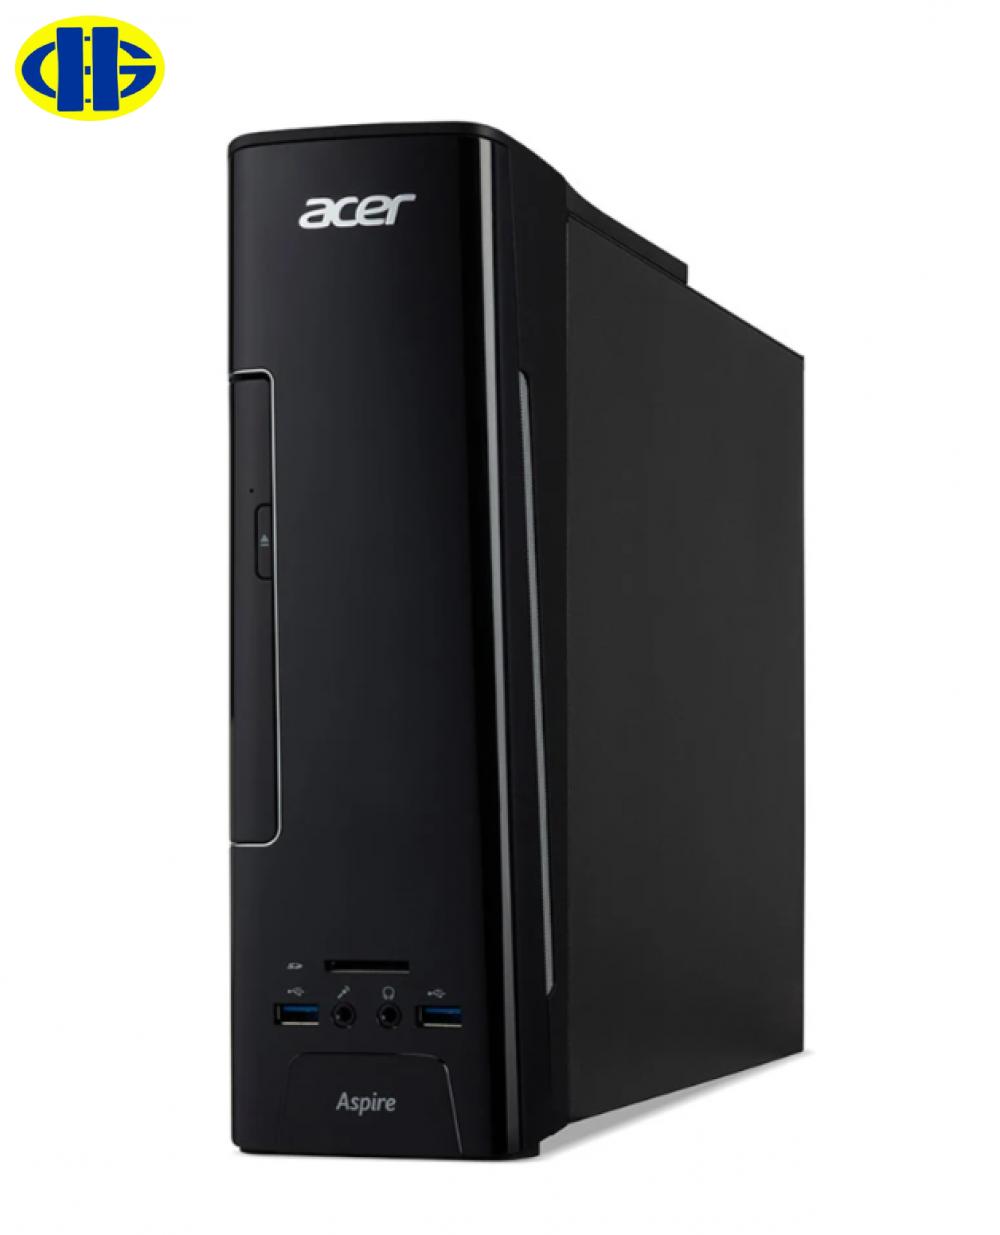 Máy tính để bàn - PC Acer Aspire AS-XC780 DT.B8ASV.006 (i5-7400/4GB/1TB HDD/GT 720/Free DOS)